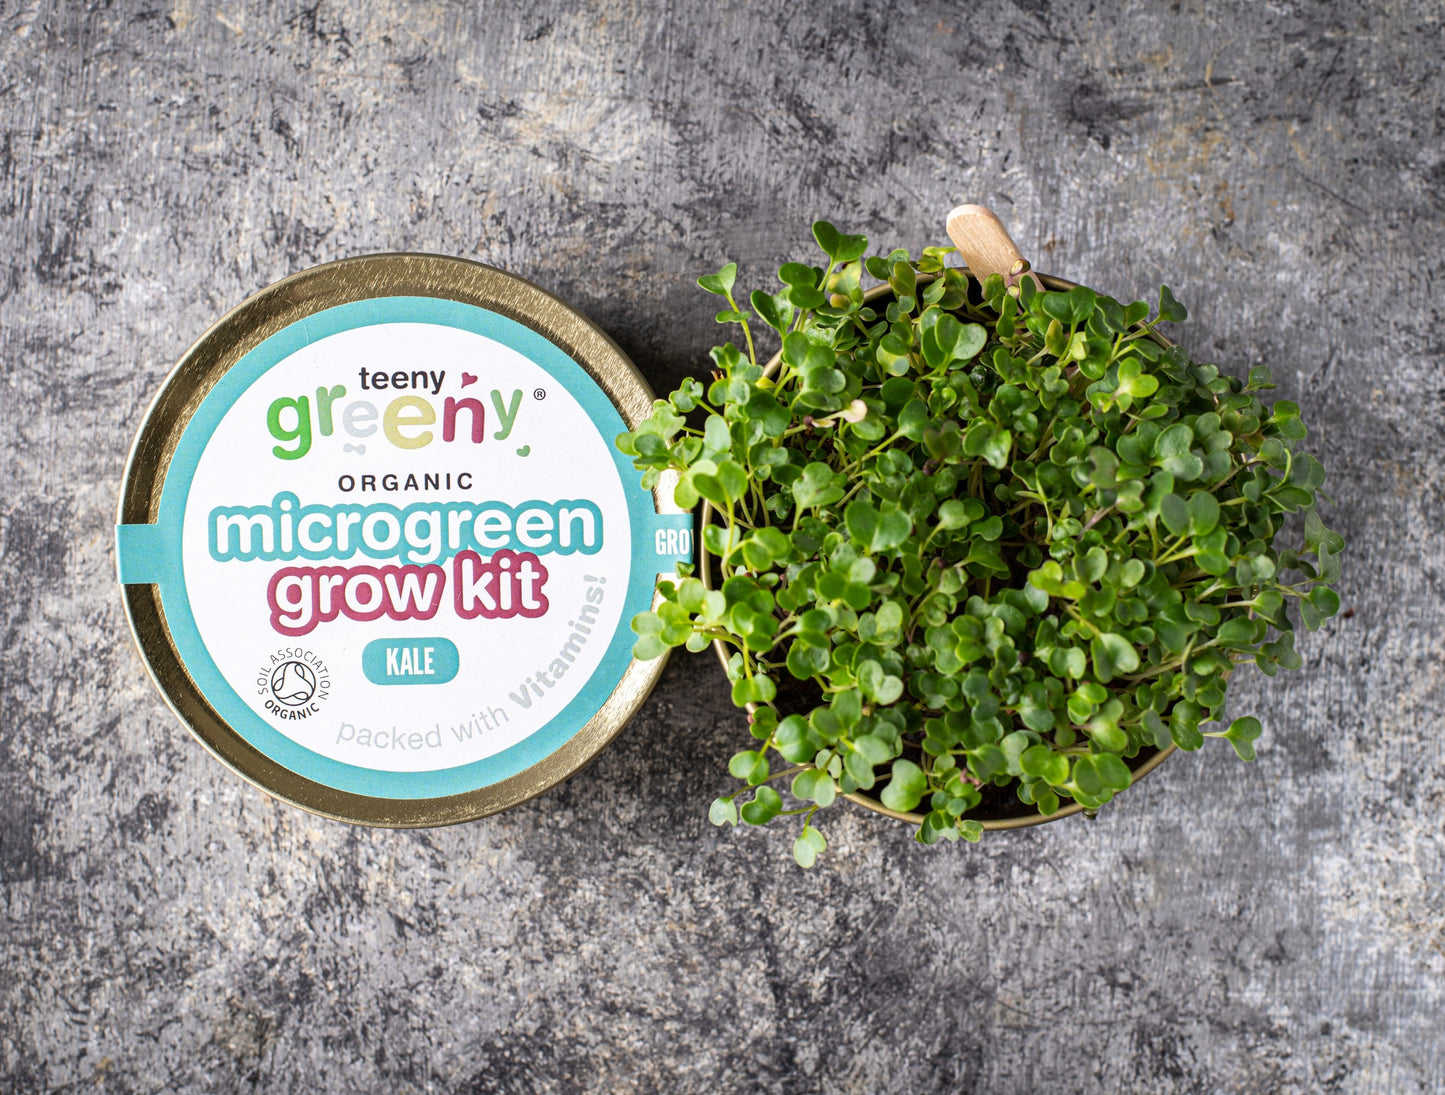 Grow Microgreens for energy